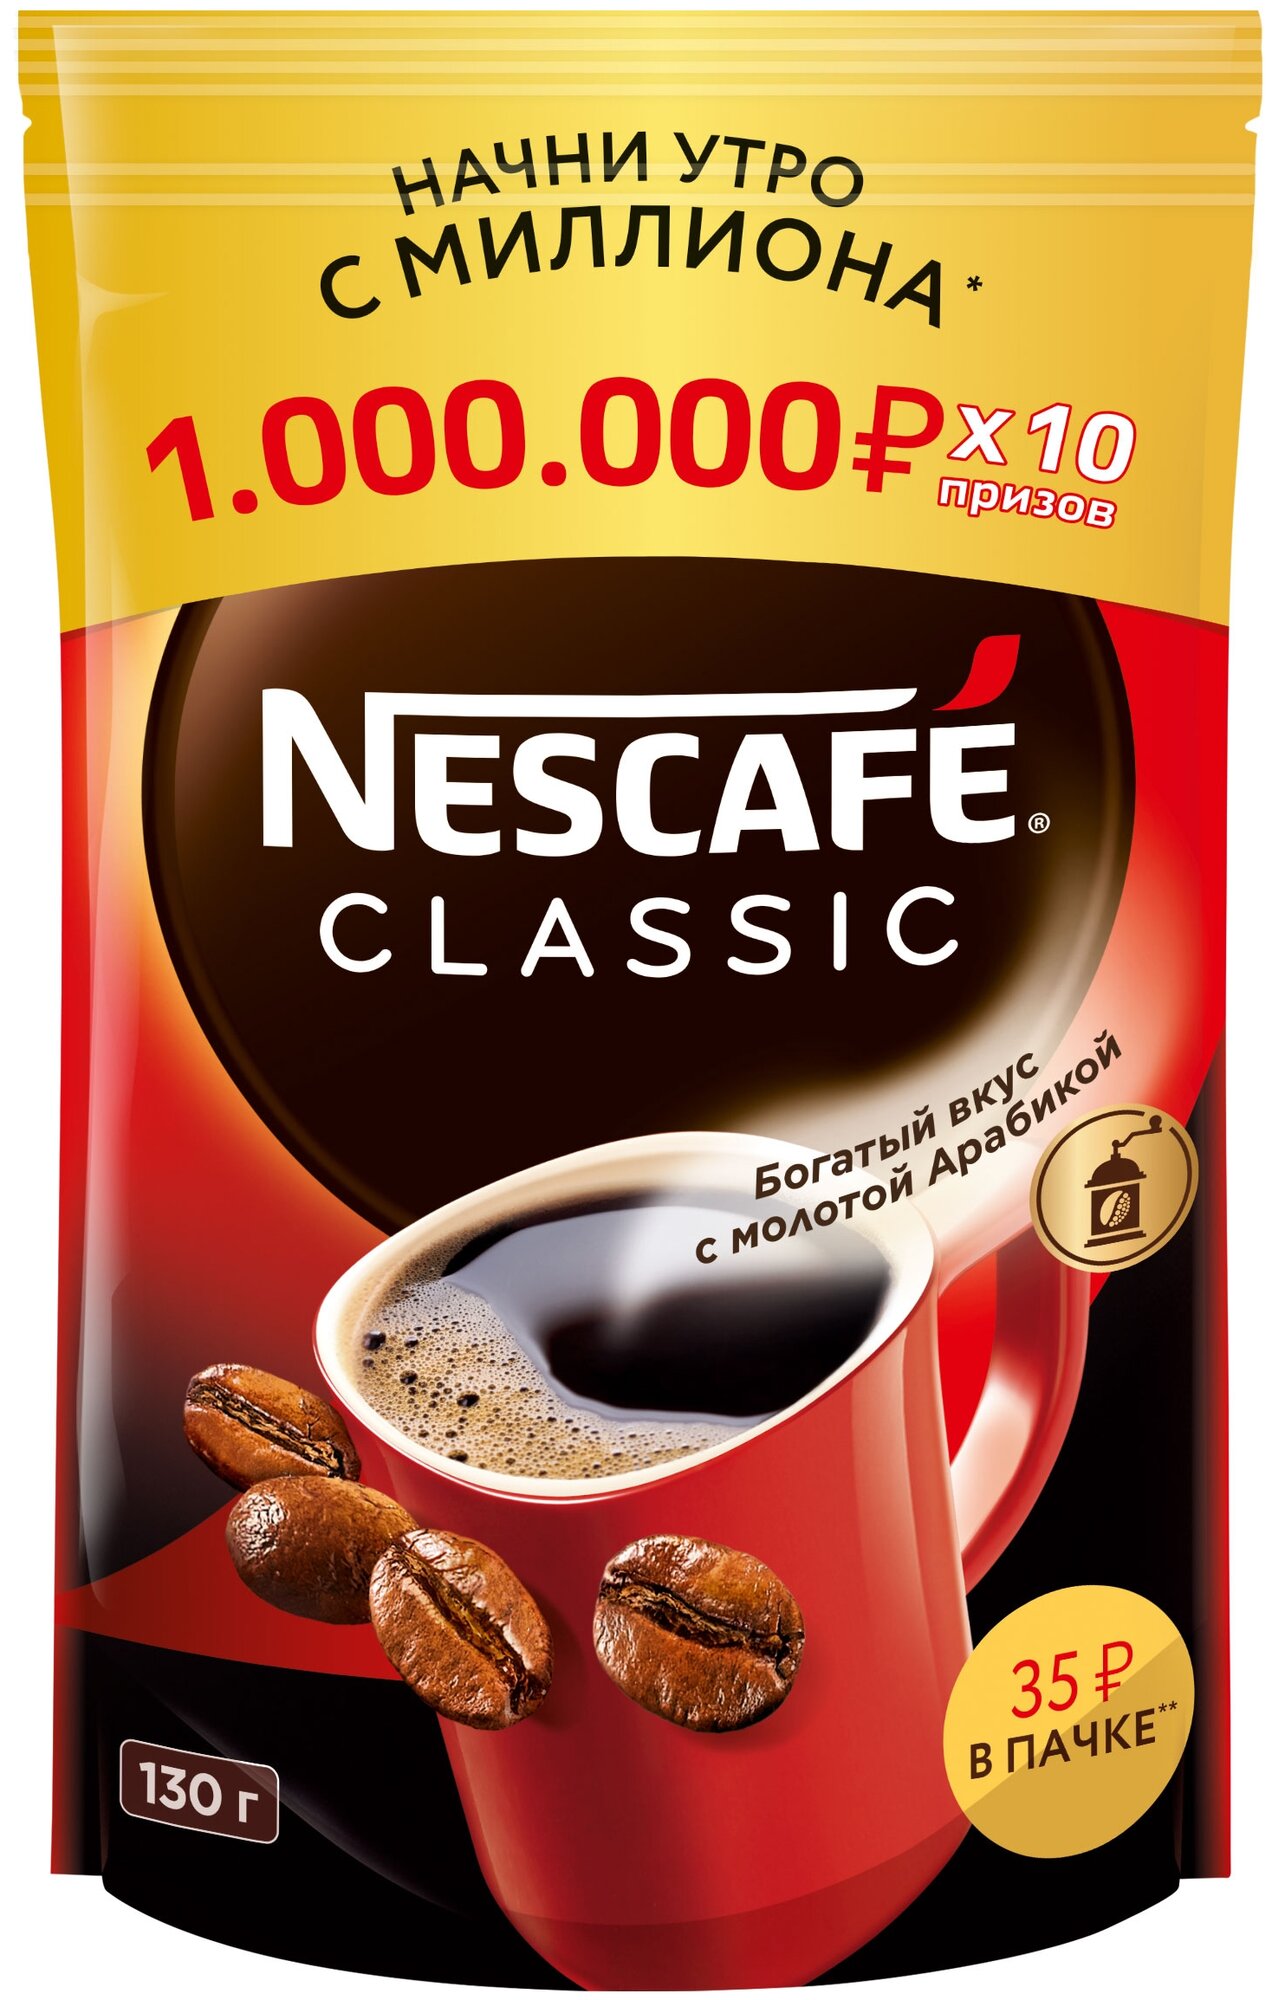 NESCAFÉ® CLASSIC, 100% натуральный растворимый порошкообразный кофе с добавлением натурального жареного молотого кофе, 130г, пакет